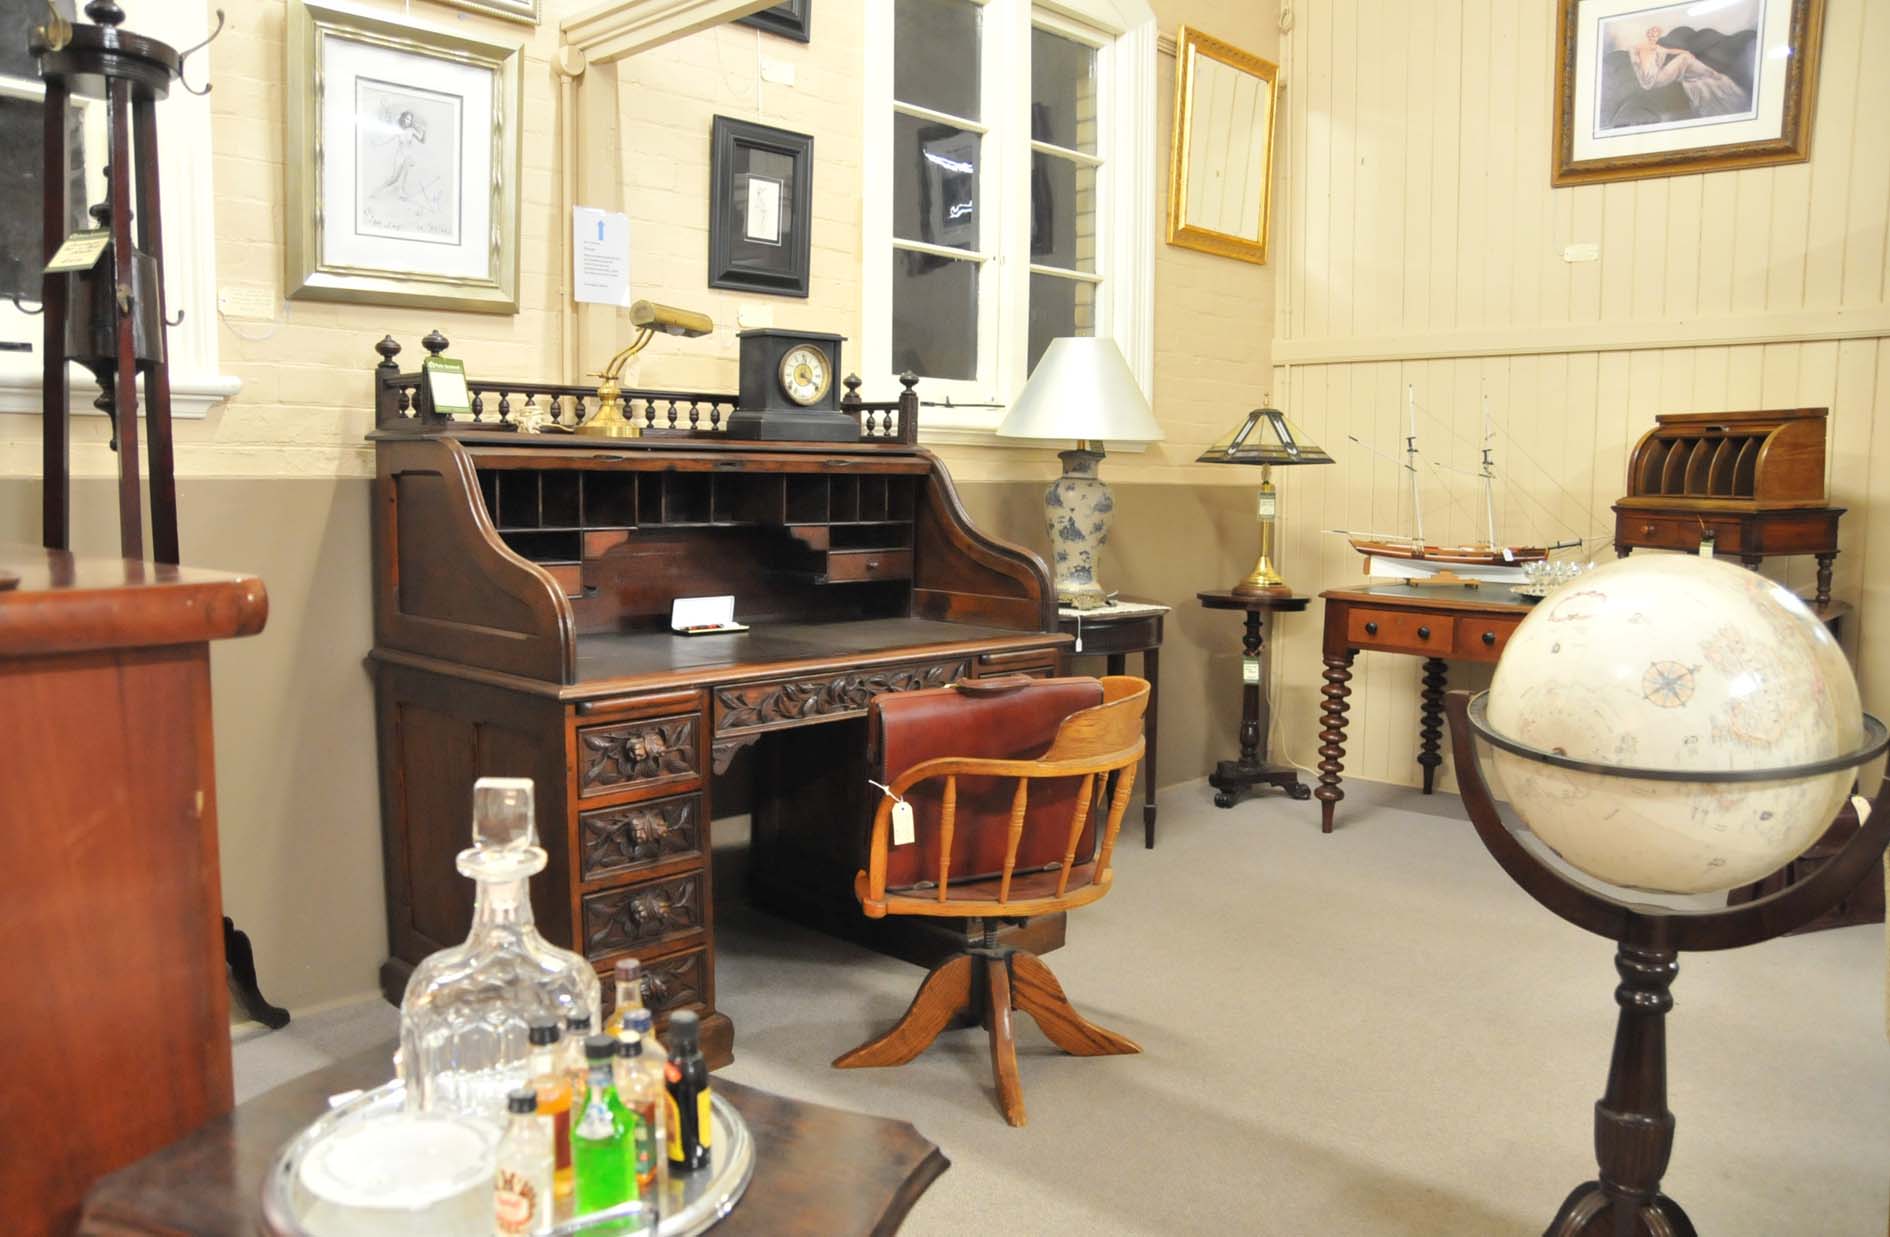 Antique furniture at Ipswich Antique Centre